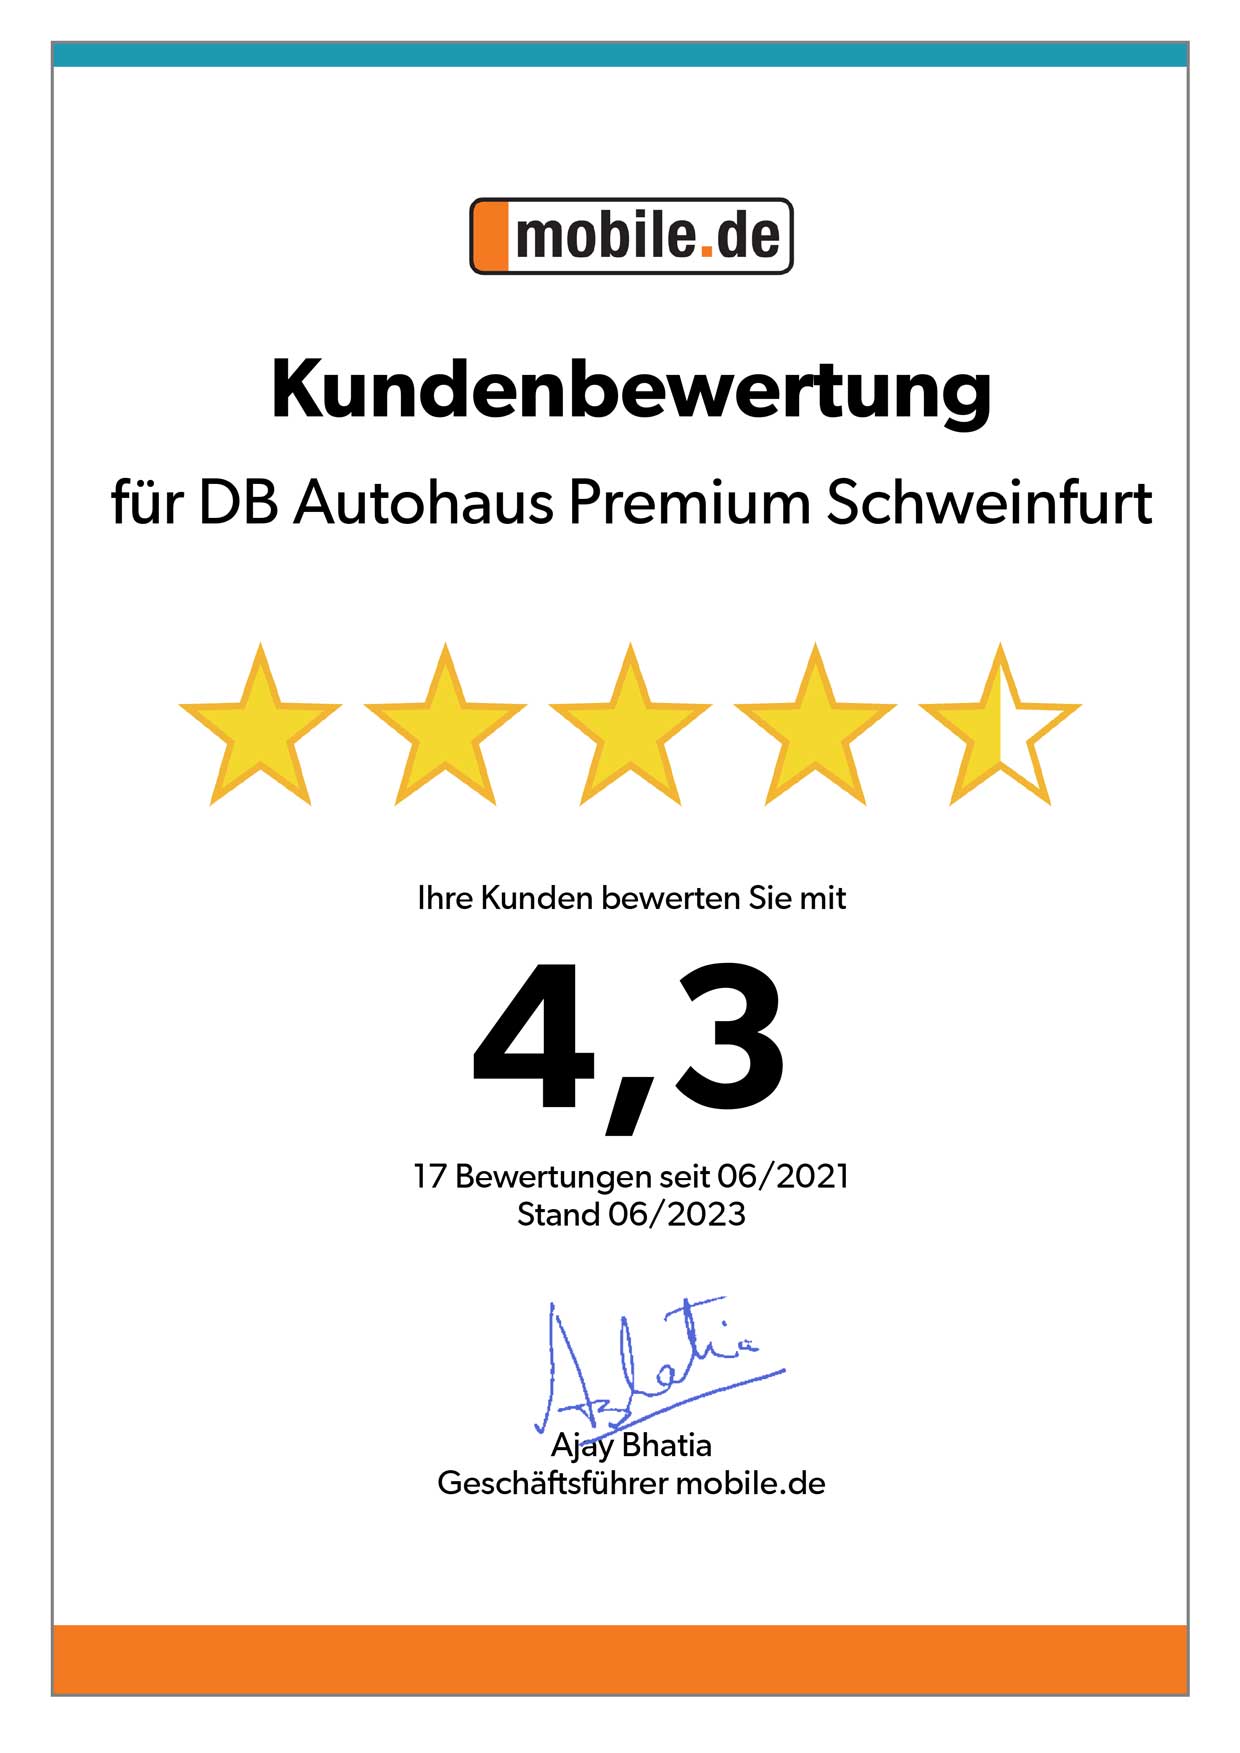 Auszeichnung von mobile.de für DB Autohaus Premium Schweinfurt